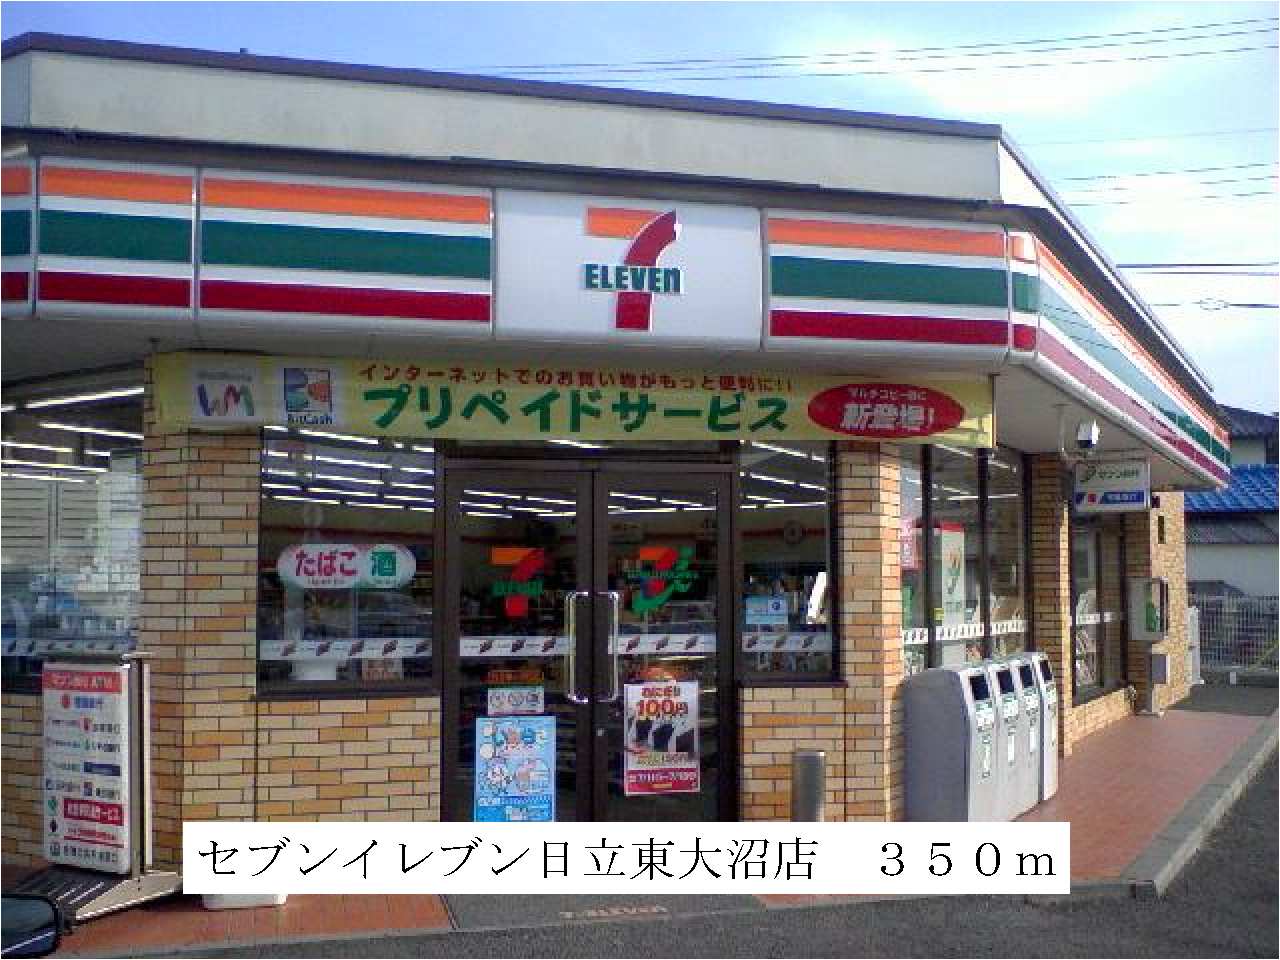 Convenience store. Seven-Eleven Hitachi Higashionuma store up (convenience store) 350m